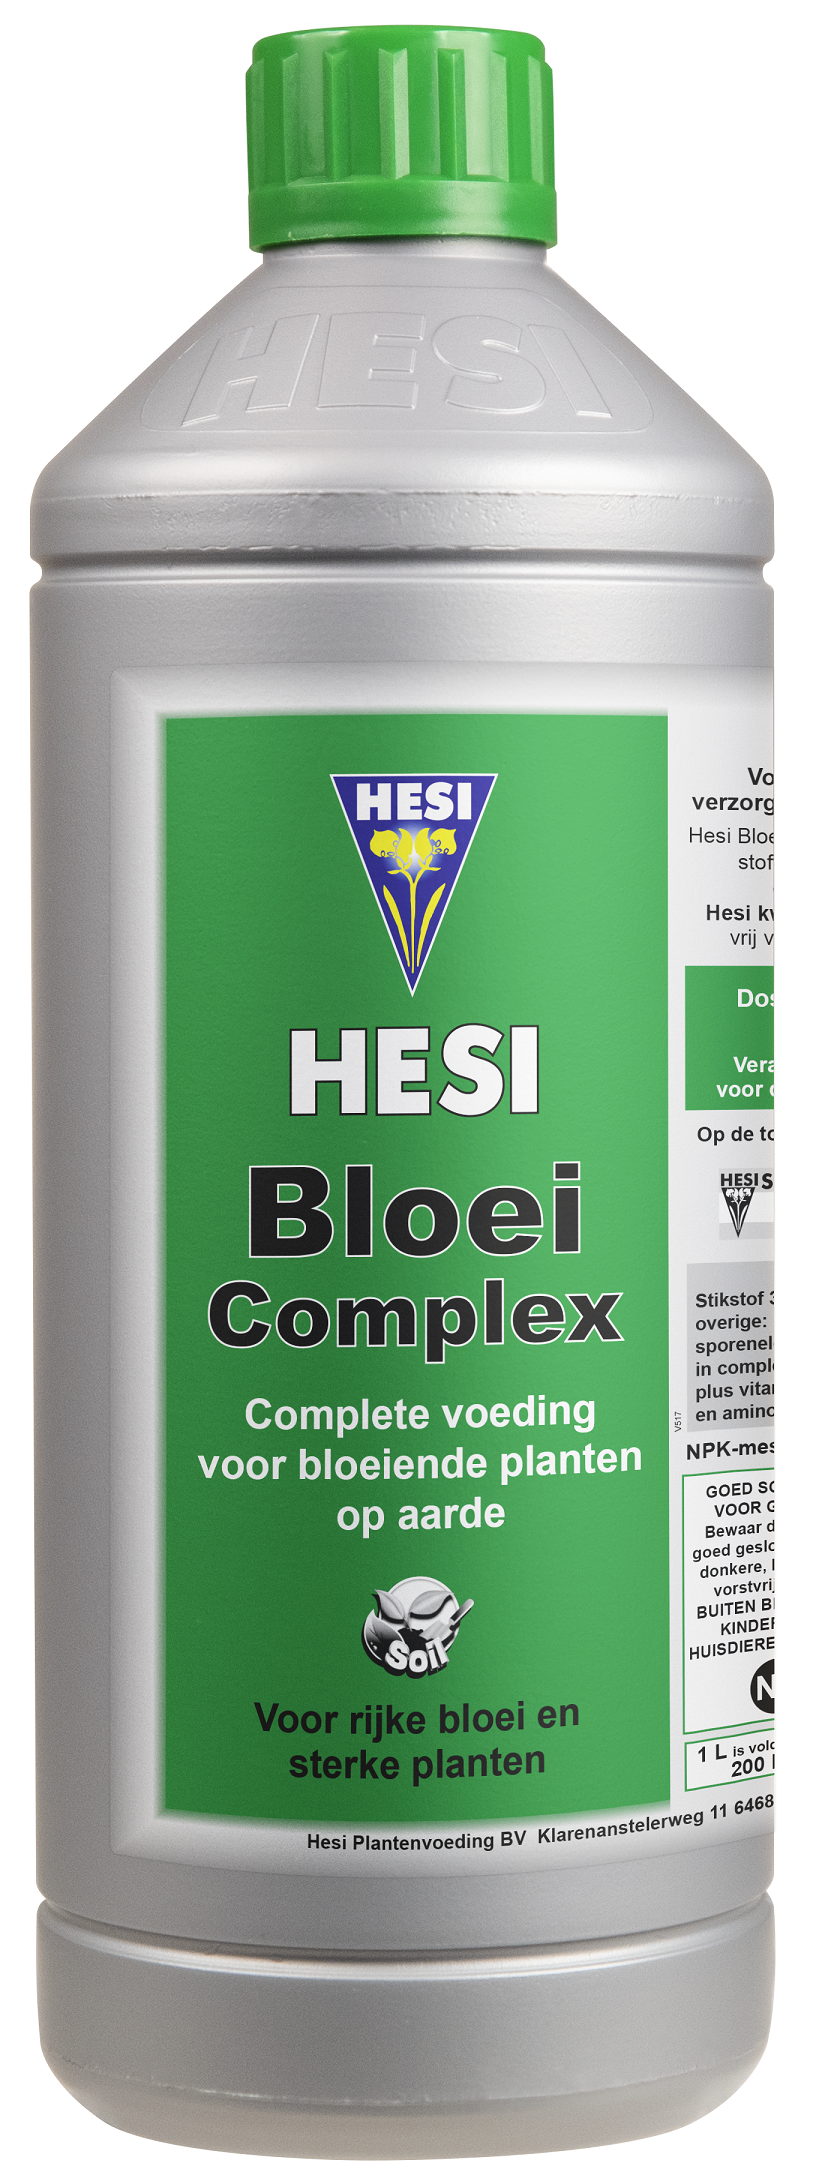 Hesi Bloom complex - 1 liter